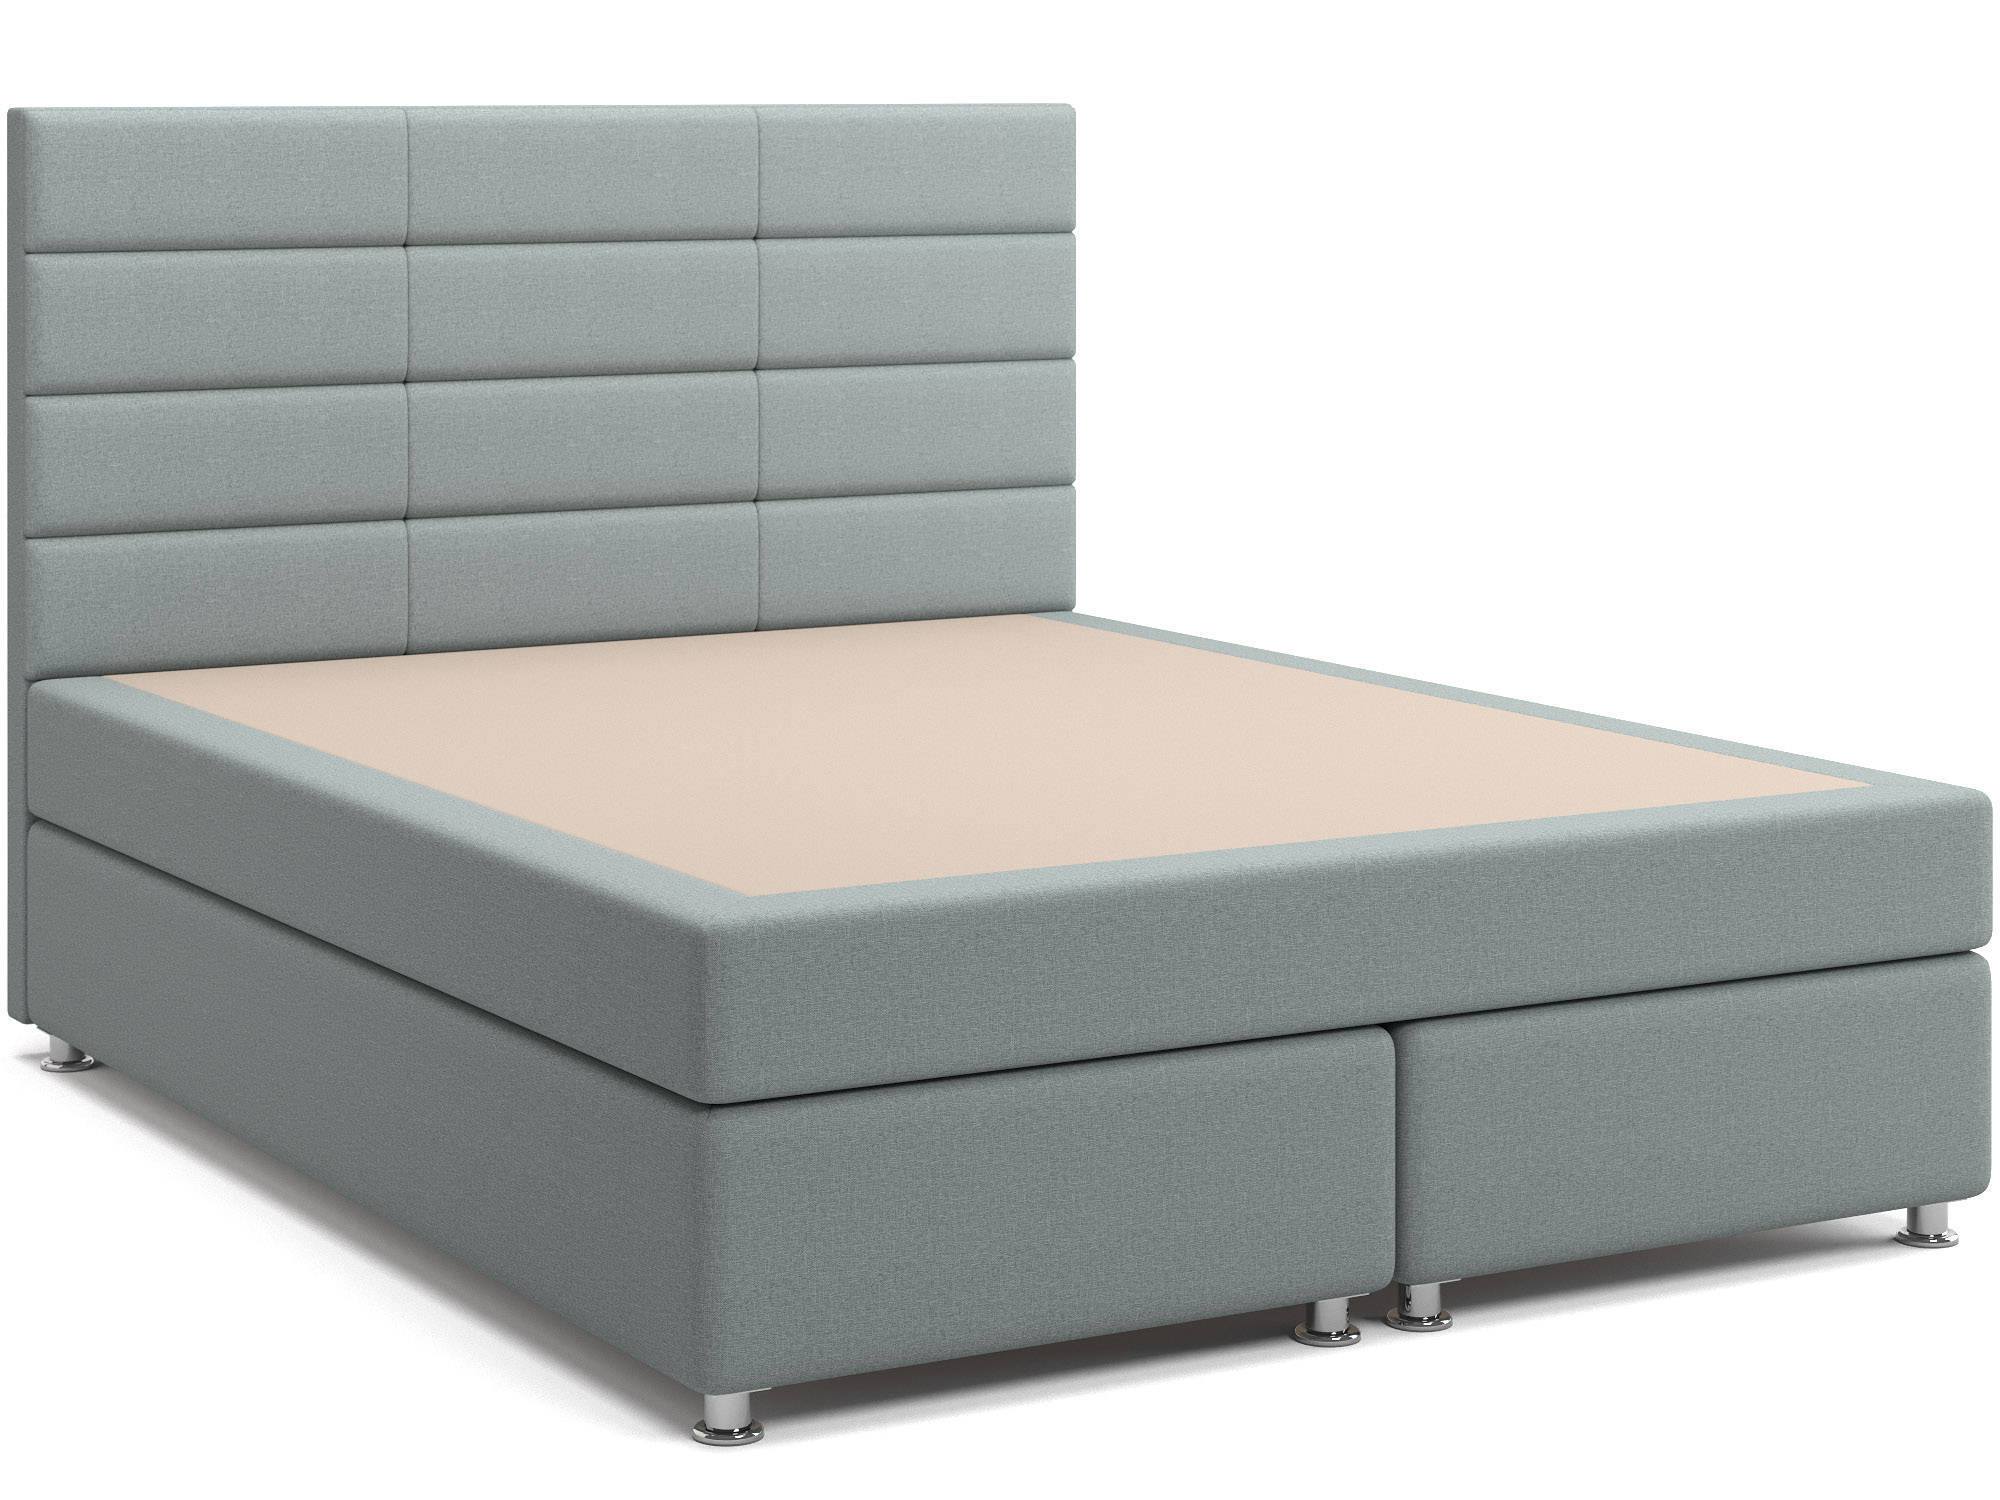 Кровать с матрасом и зависимым пружинным блоком Бриз (160х200) Box Spring ДСП, ДВП кровать с матрасом граф 160х192 шоколадный дсп брус сосны